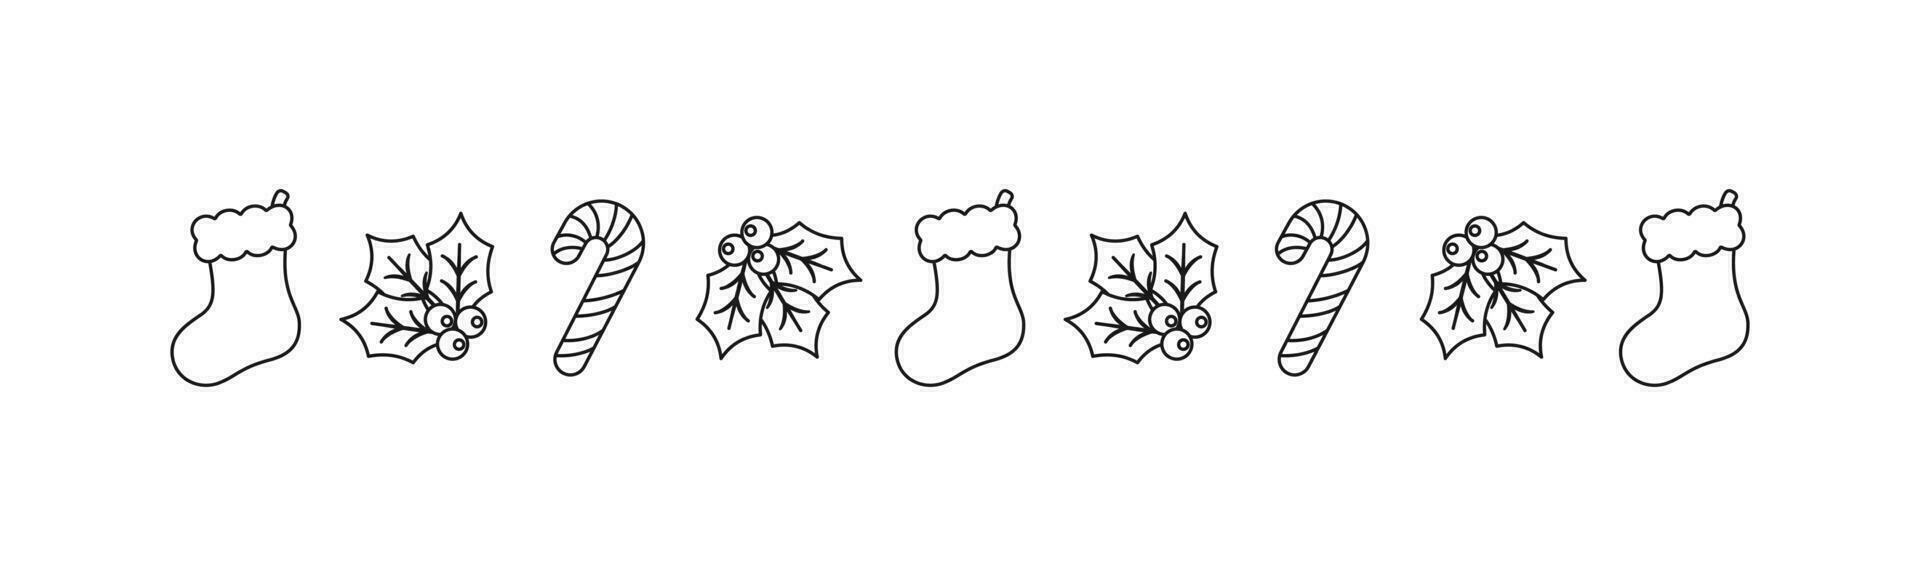 Natale a tema decorativo confine e testo divisore, Natale calza, caramella canna e vischio modello scarabocchio. vettore illustrazione.